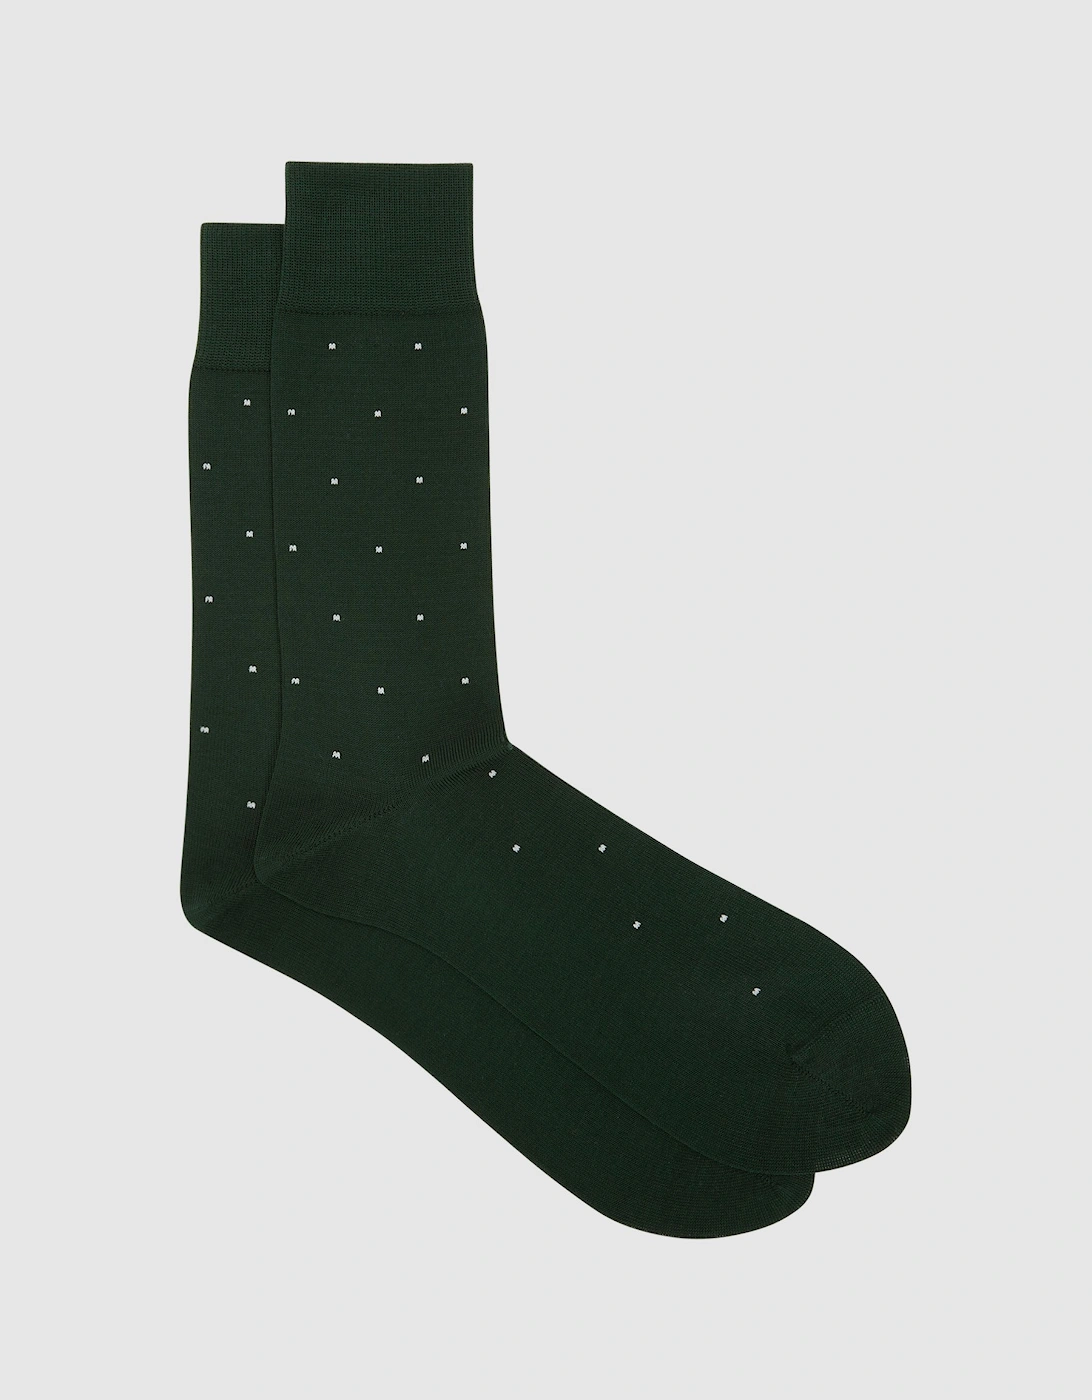 Polka Dot Socks, 2 of 1